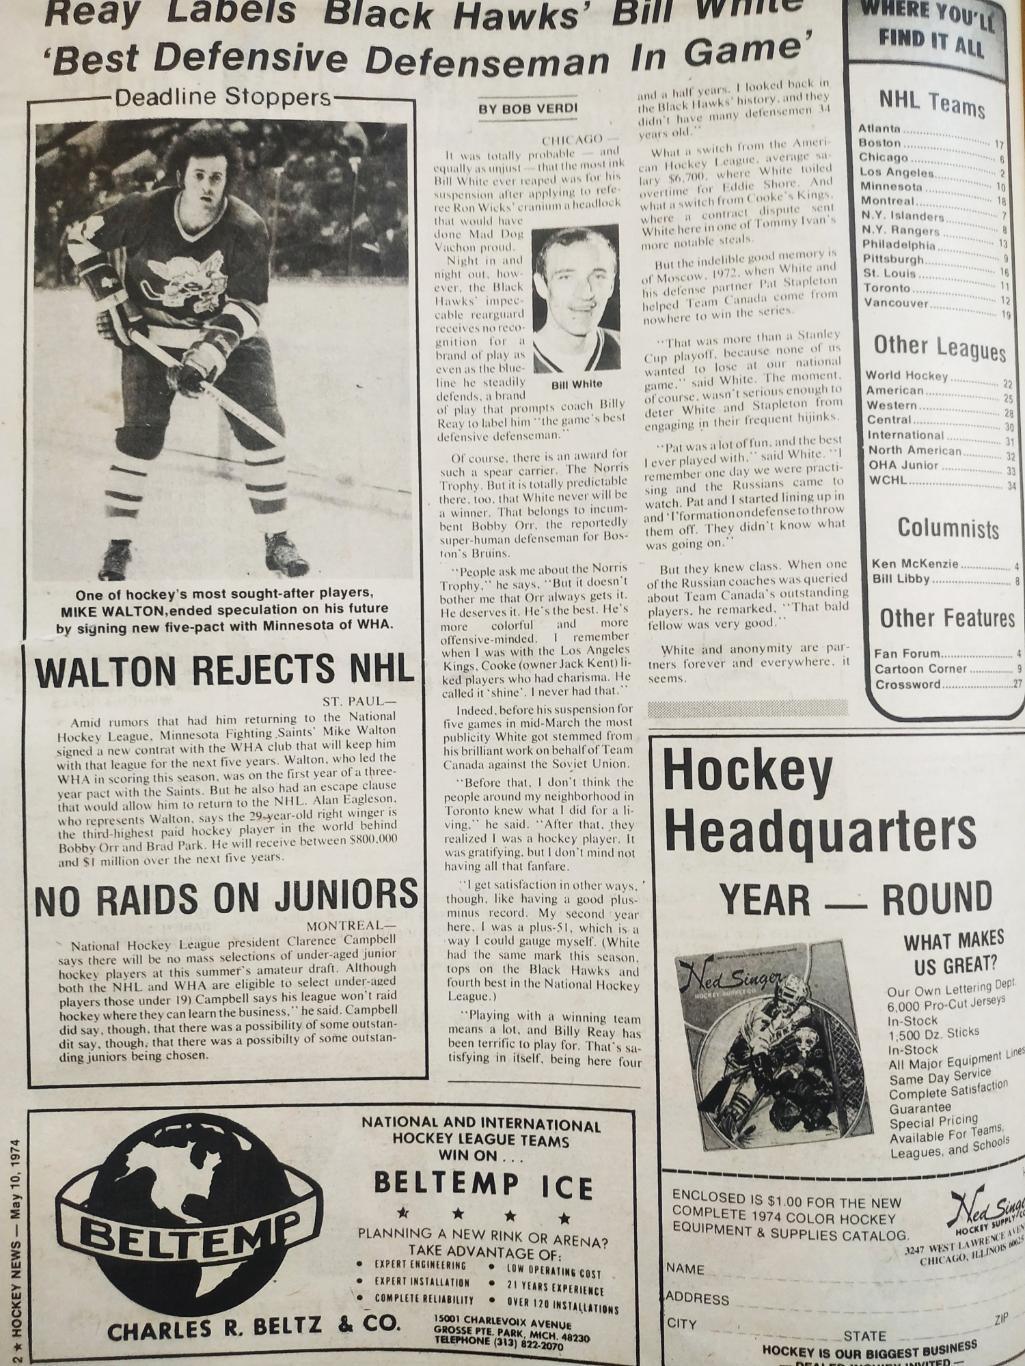 ХОККЕЙ ЖУРНАЛ ЕЖЕНЕДЕЛЬНИК НХЛ НОВОСТИ ХОККЕЯ MAY.10 1974 NHL THE HOCKEY NEWS 1